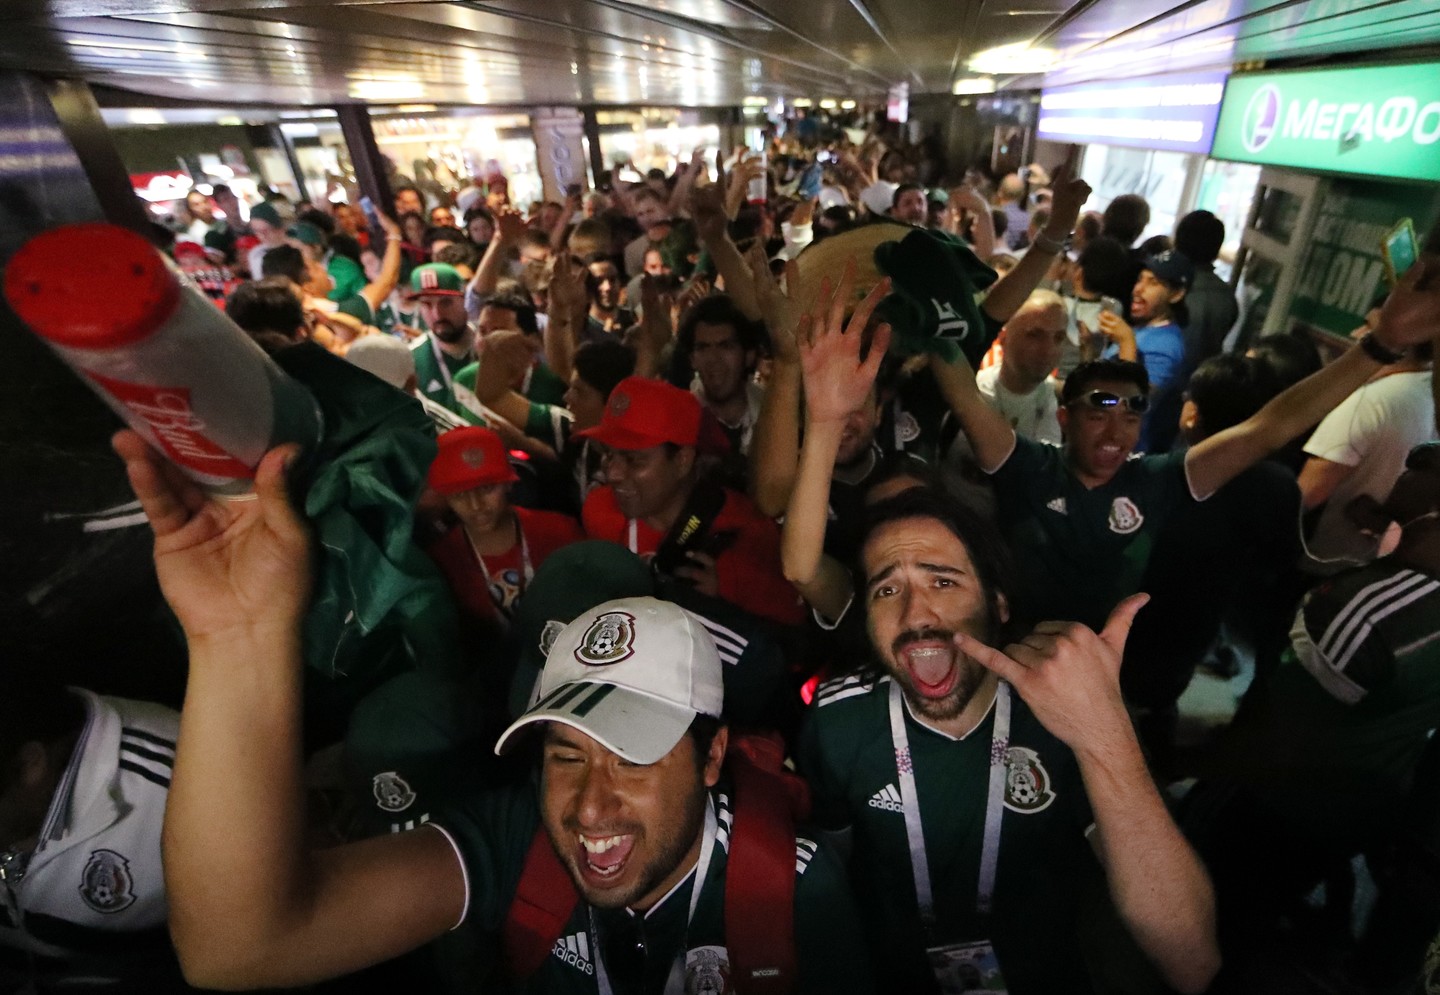 Прыжки мексиканских фанатов после гола Лосано спровоцировали землетрясение